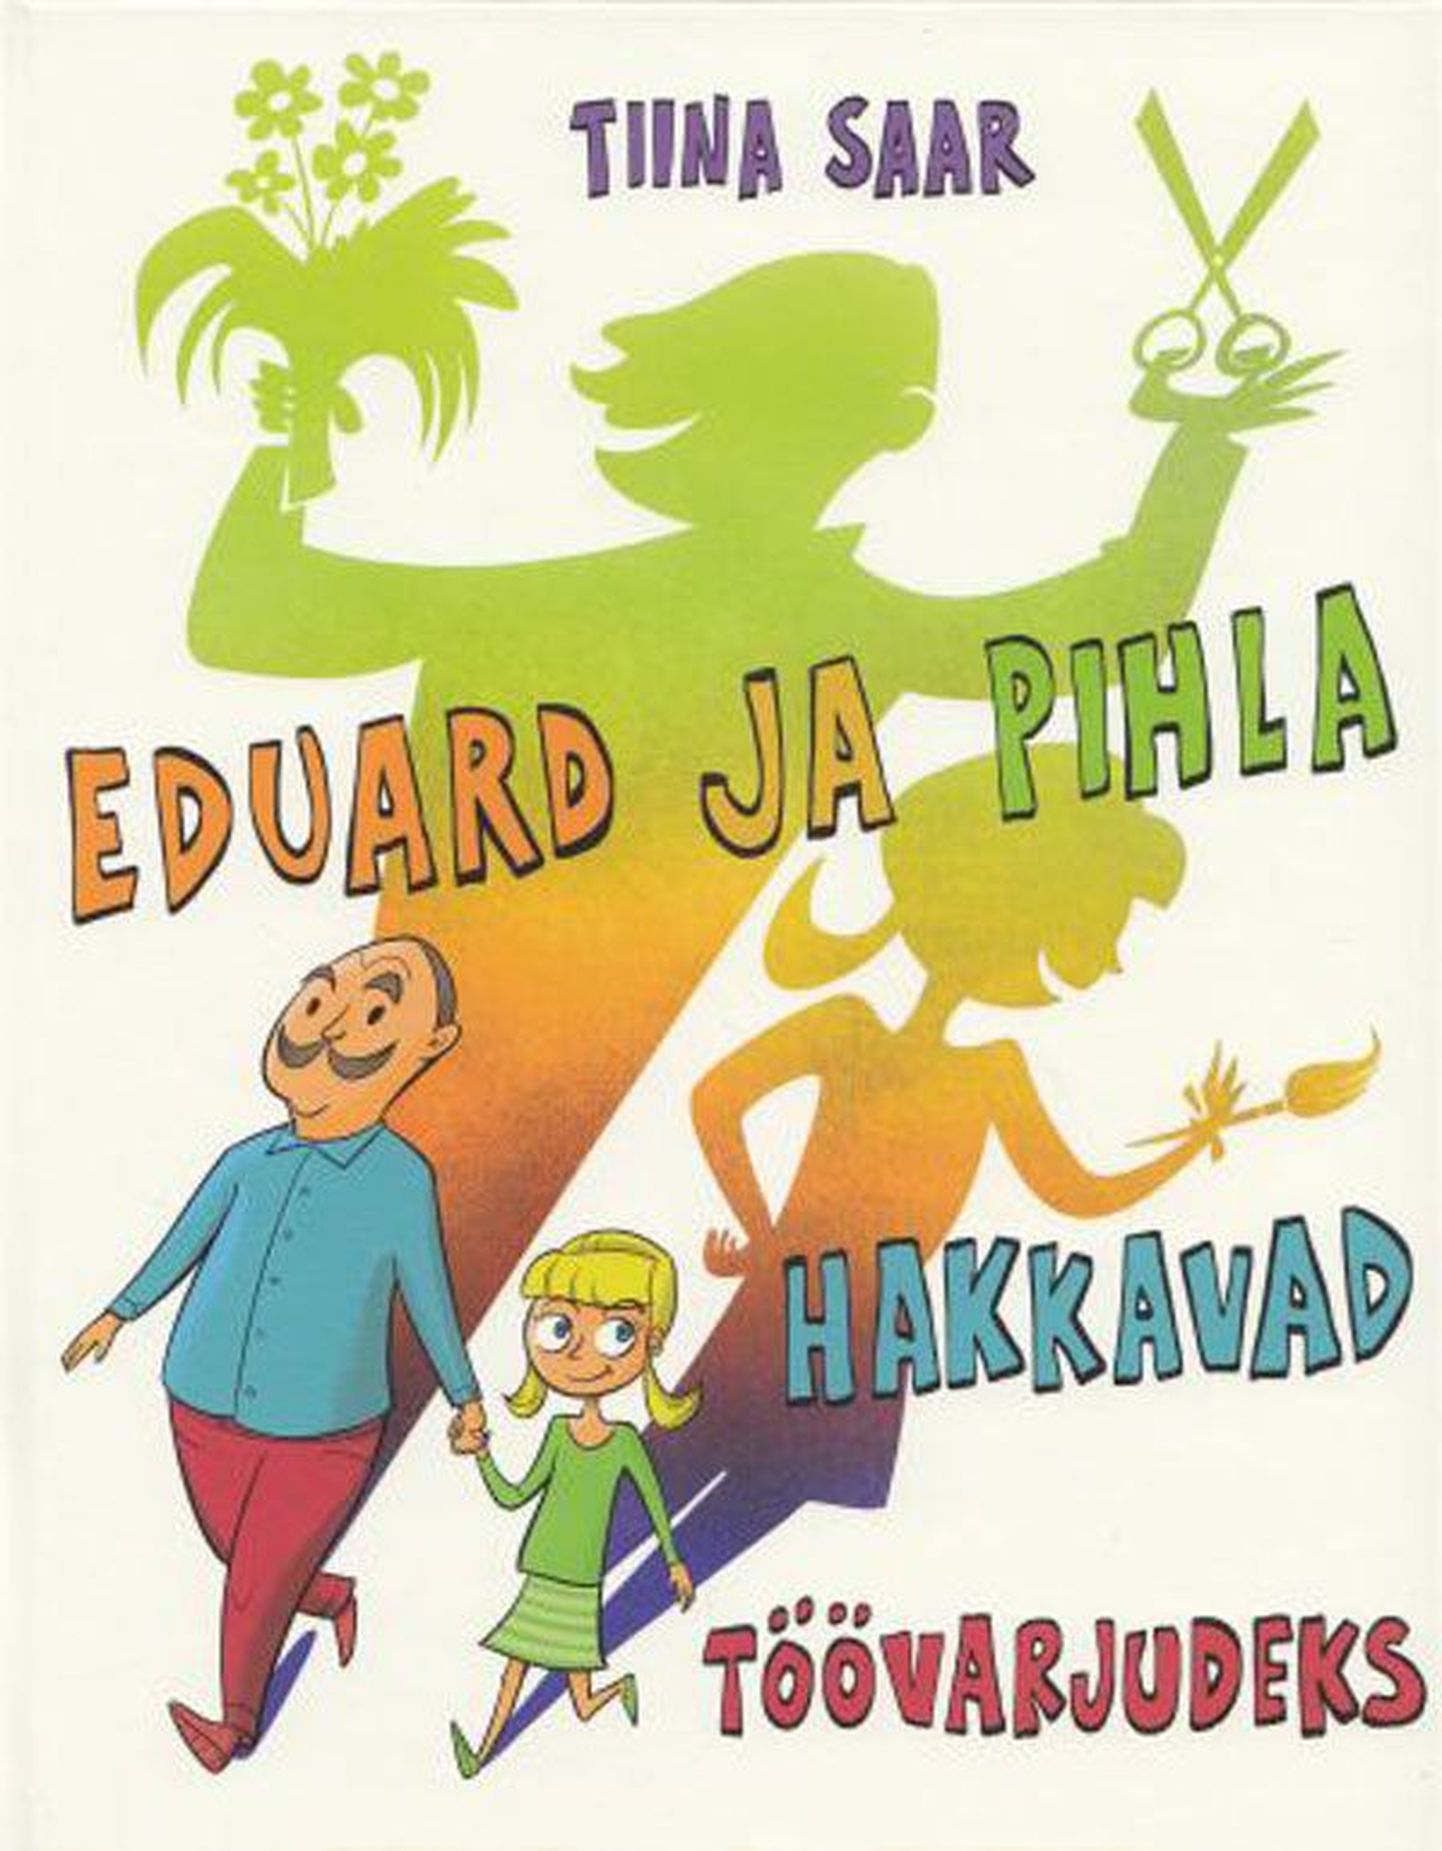 Raamat

Tiina Saar 
«Eduard ja Pihla hakkavad töö­varjudeks» 
Pildid joonistanud Joonas Sildre
Koolibri, 2012